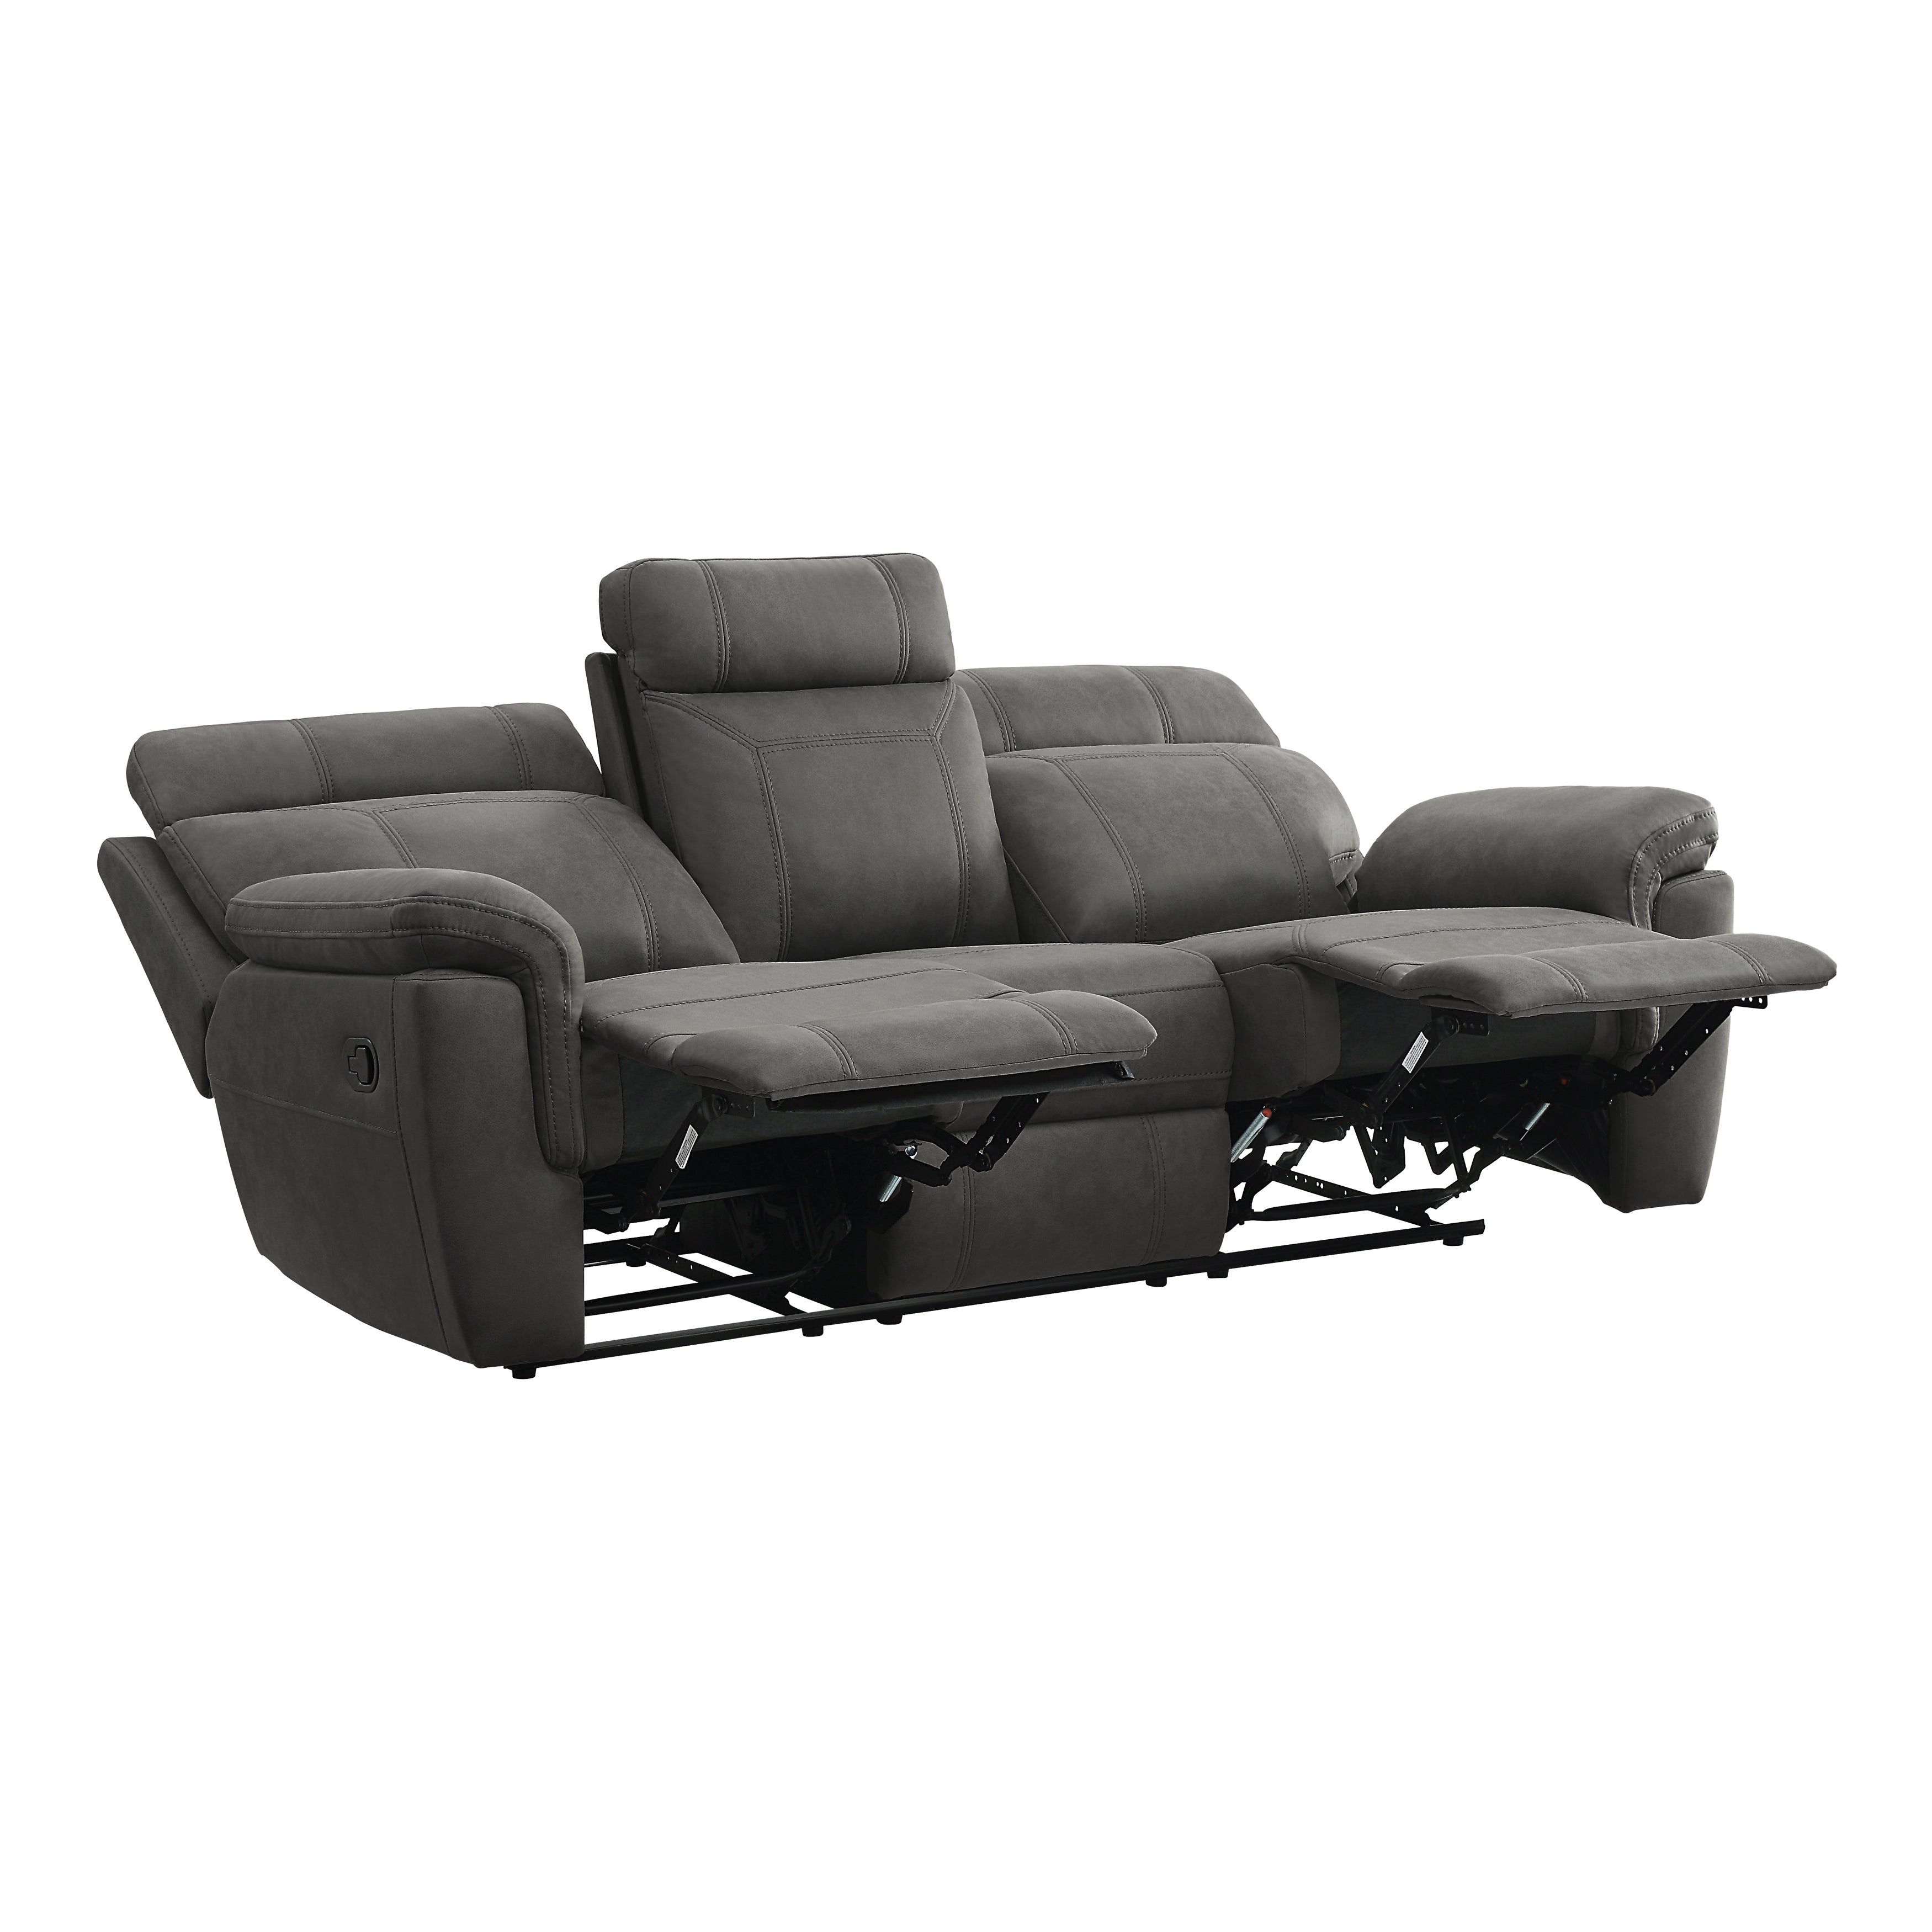 U9301 - 3 Double Recliner Sofa w/Drop-down Cup Holders (Dark Grey) - 45792